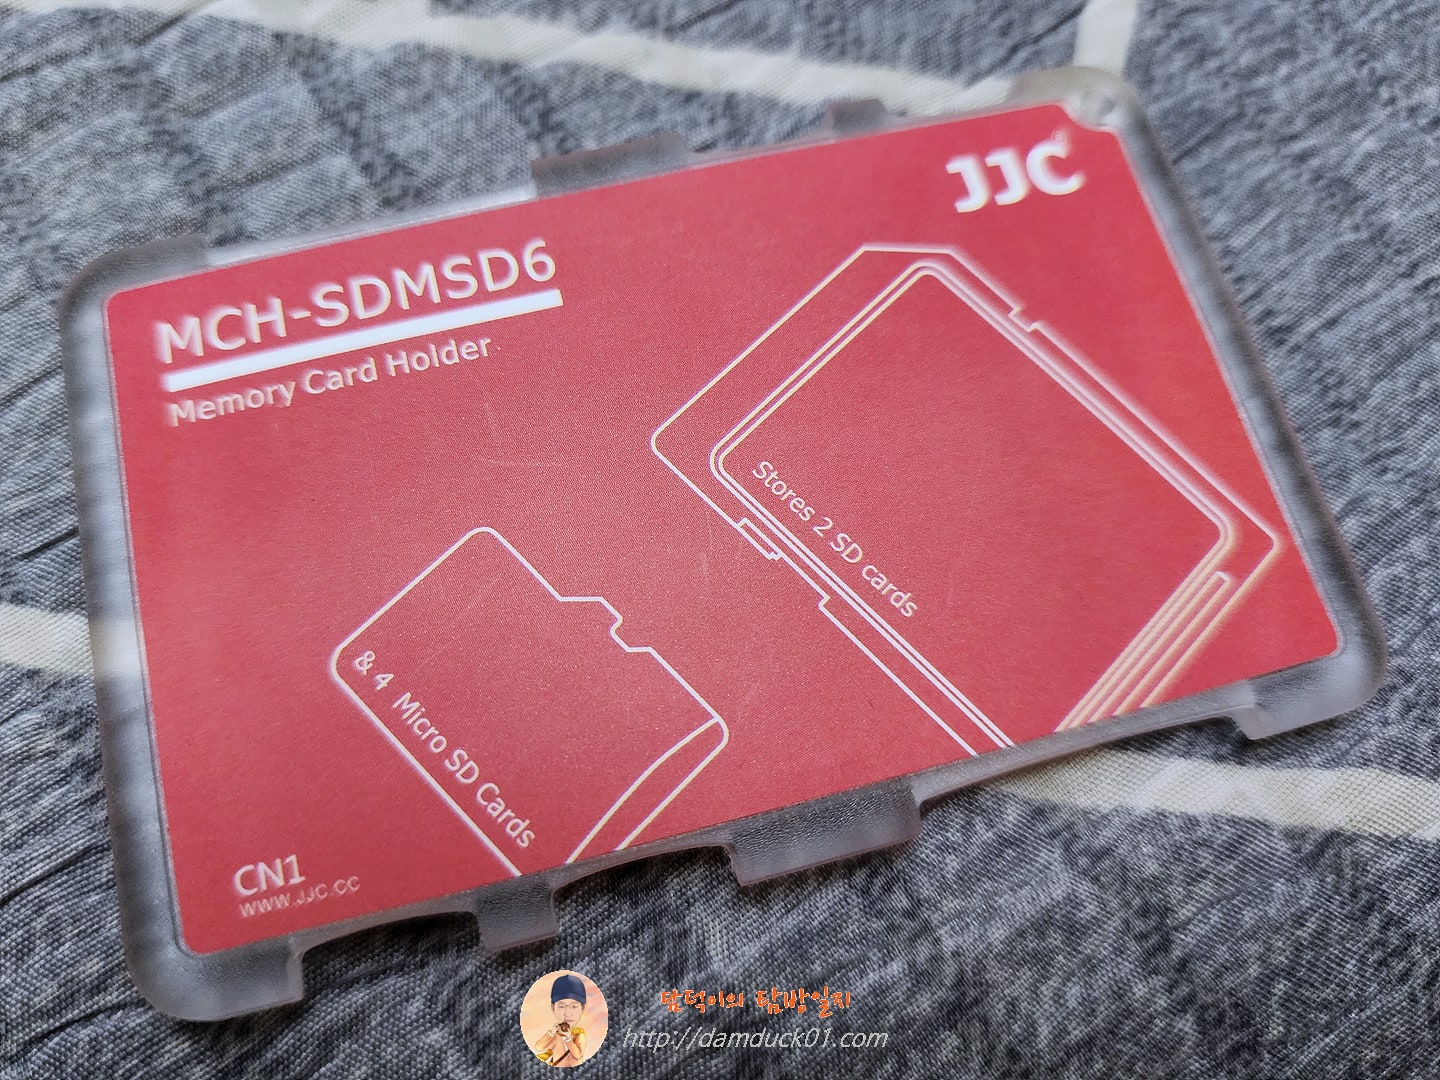 JJC 초박형 메모리 카드 케이스